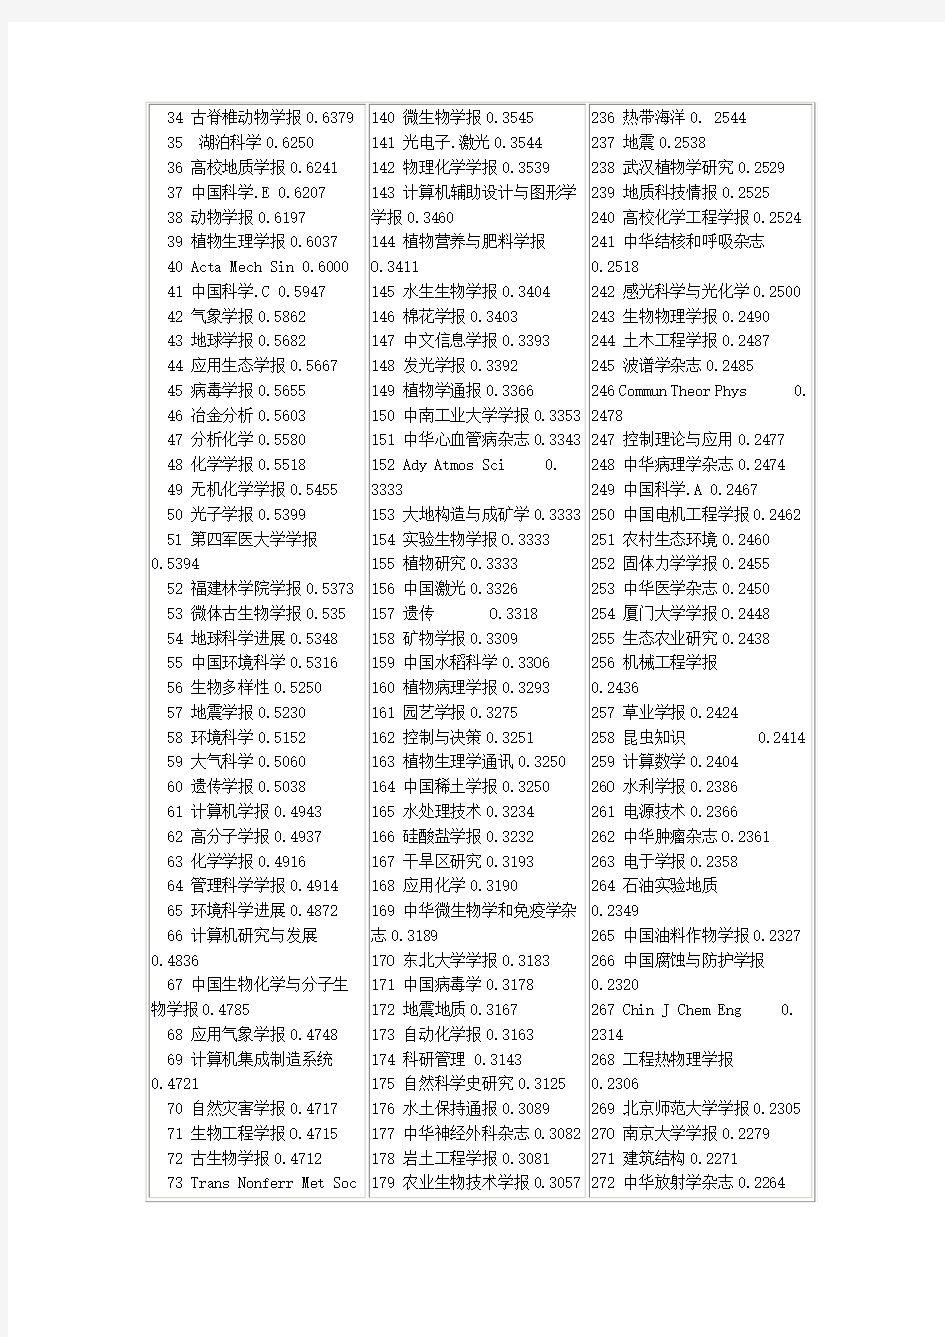 2001年影响因子最高的中国科技期刊300名排行表